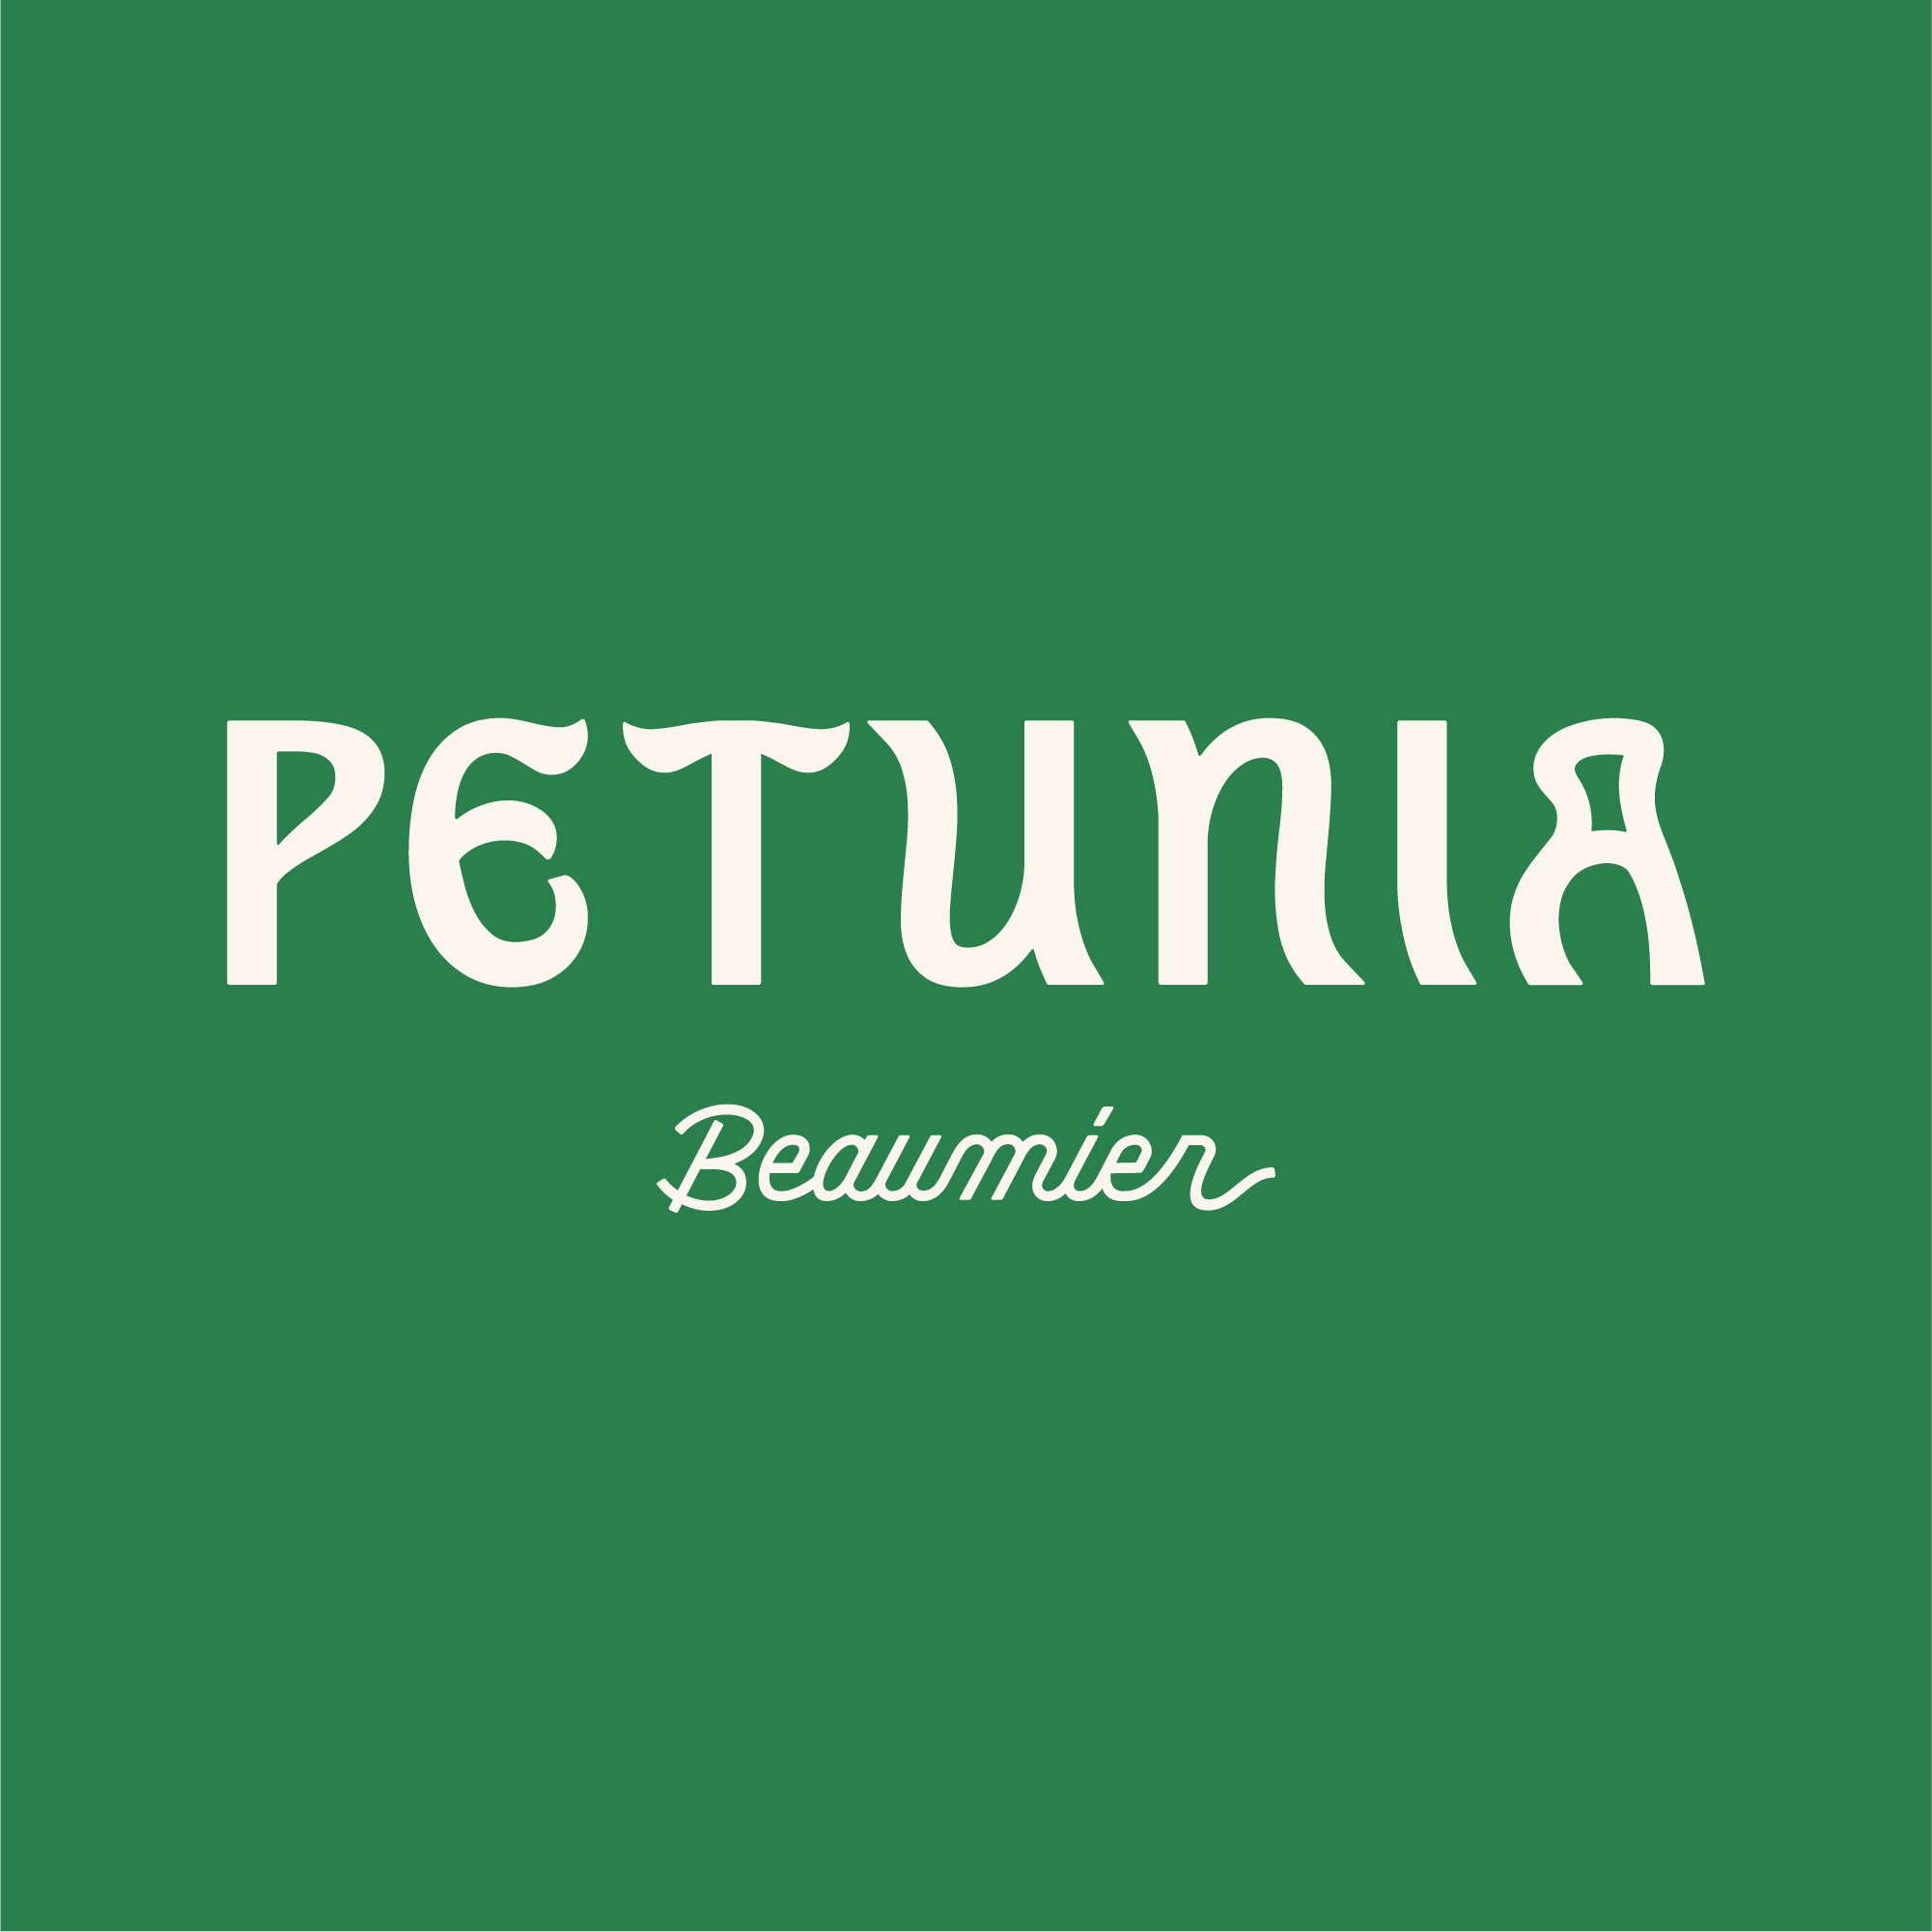 Petunia Ibiza, un hotel del gruppo Beaumier